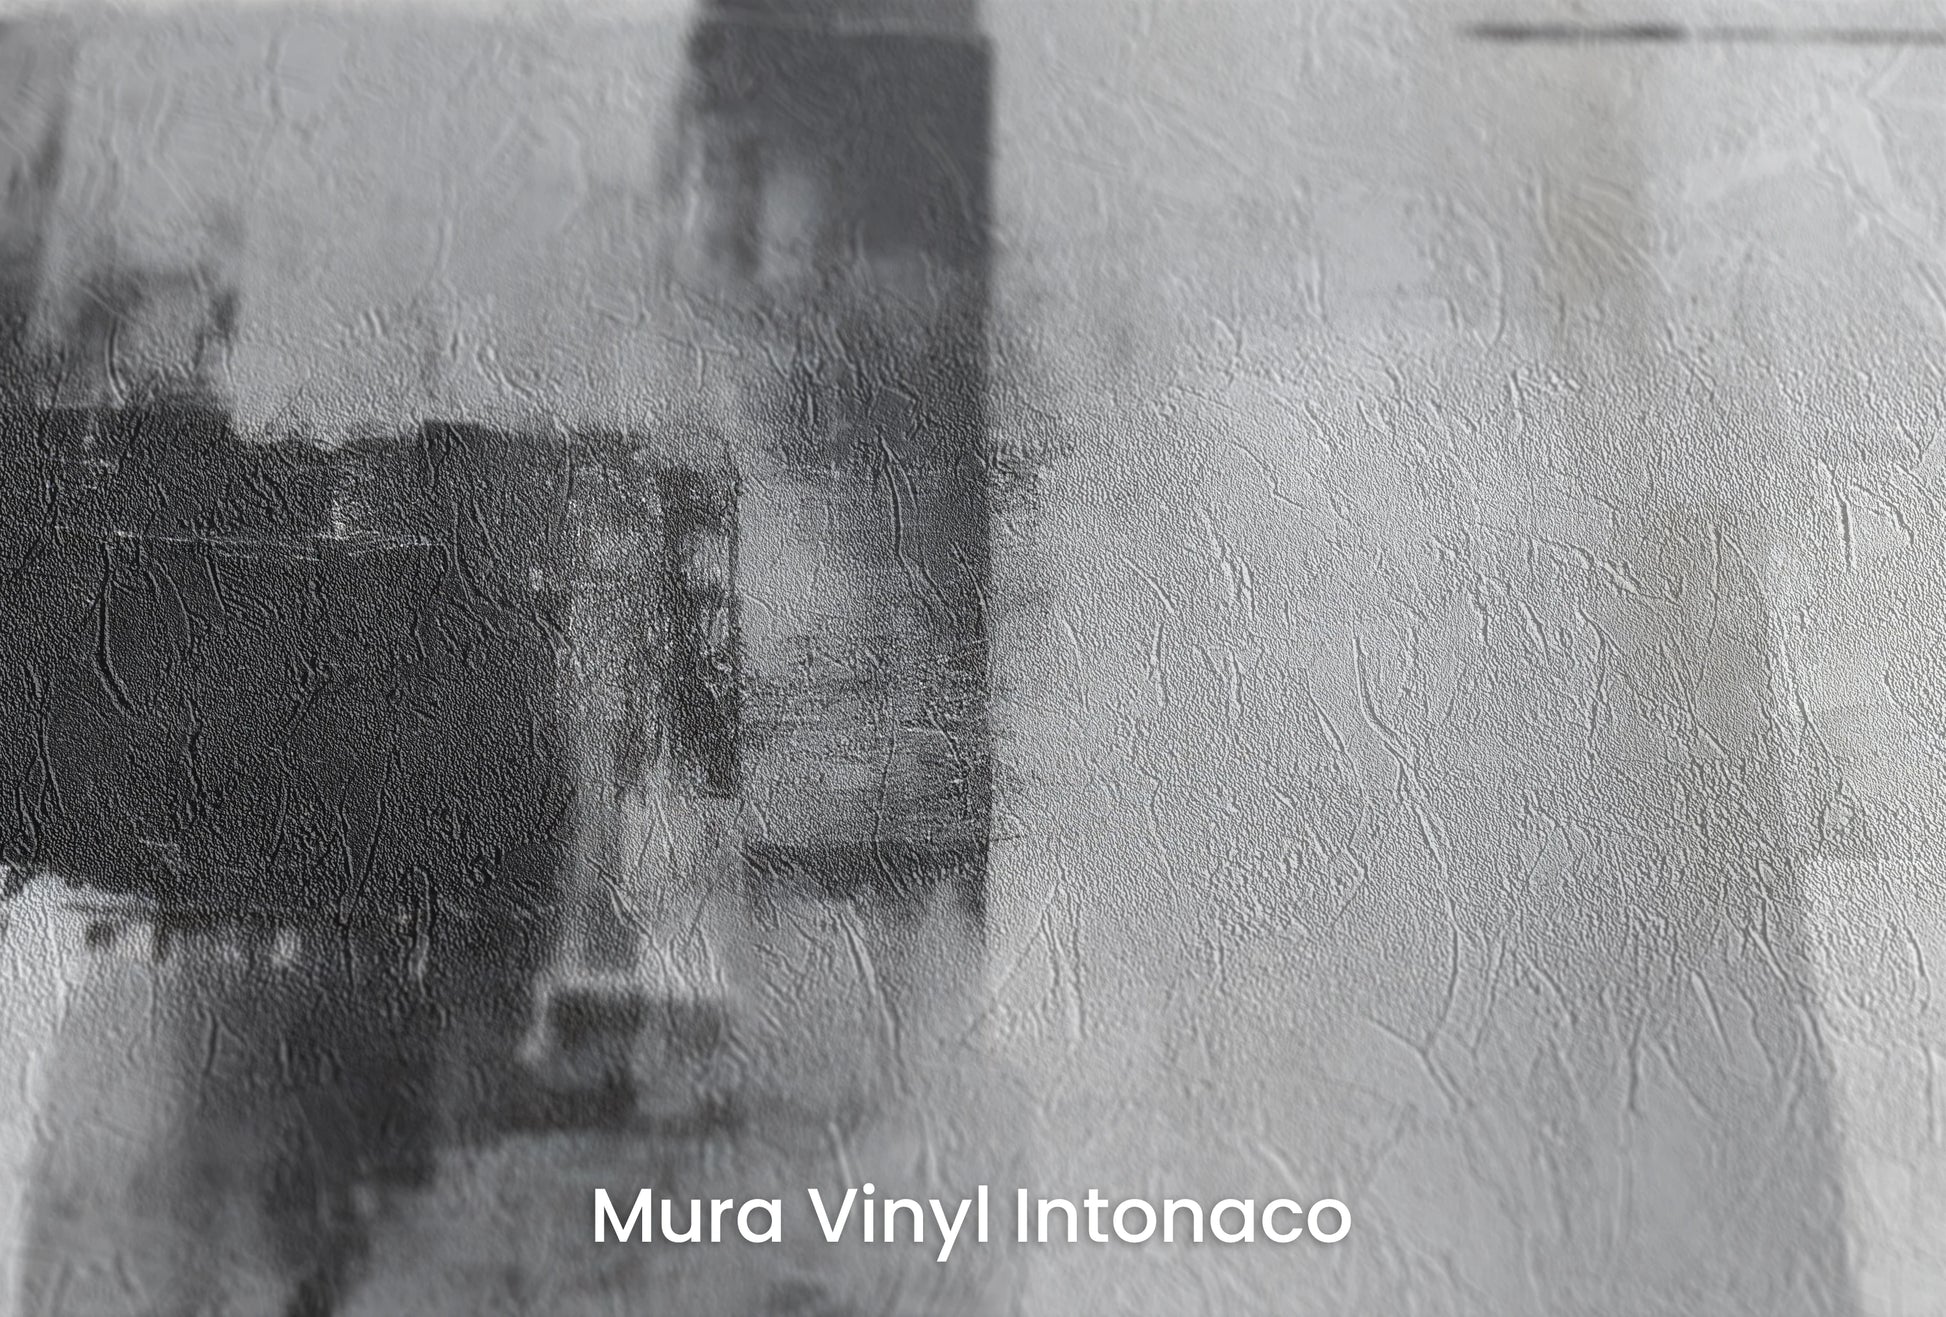 Zbliżenie na artystyczną fototapetę o nazwie Intersecting Planes na podłożu Mura Vinyl Intonaco - struktura tartego tynku.